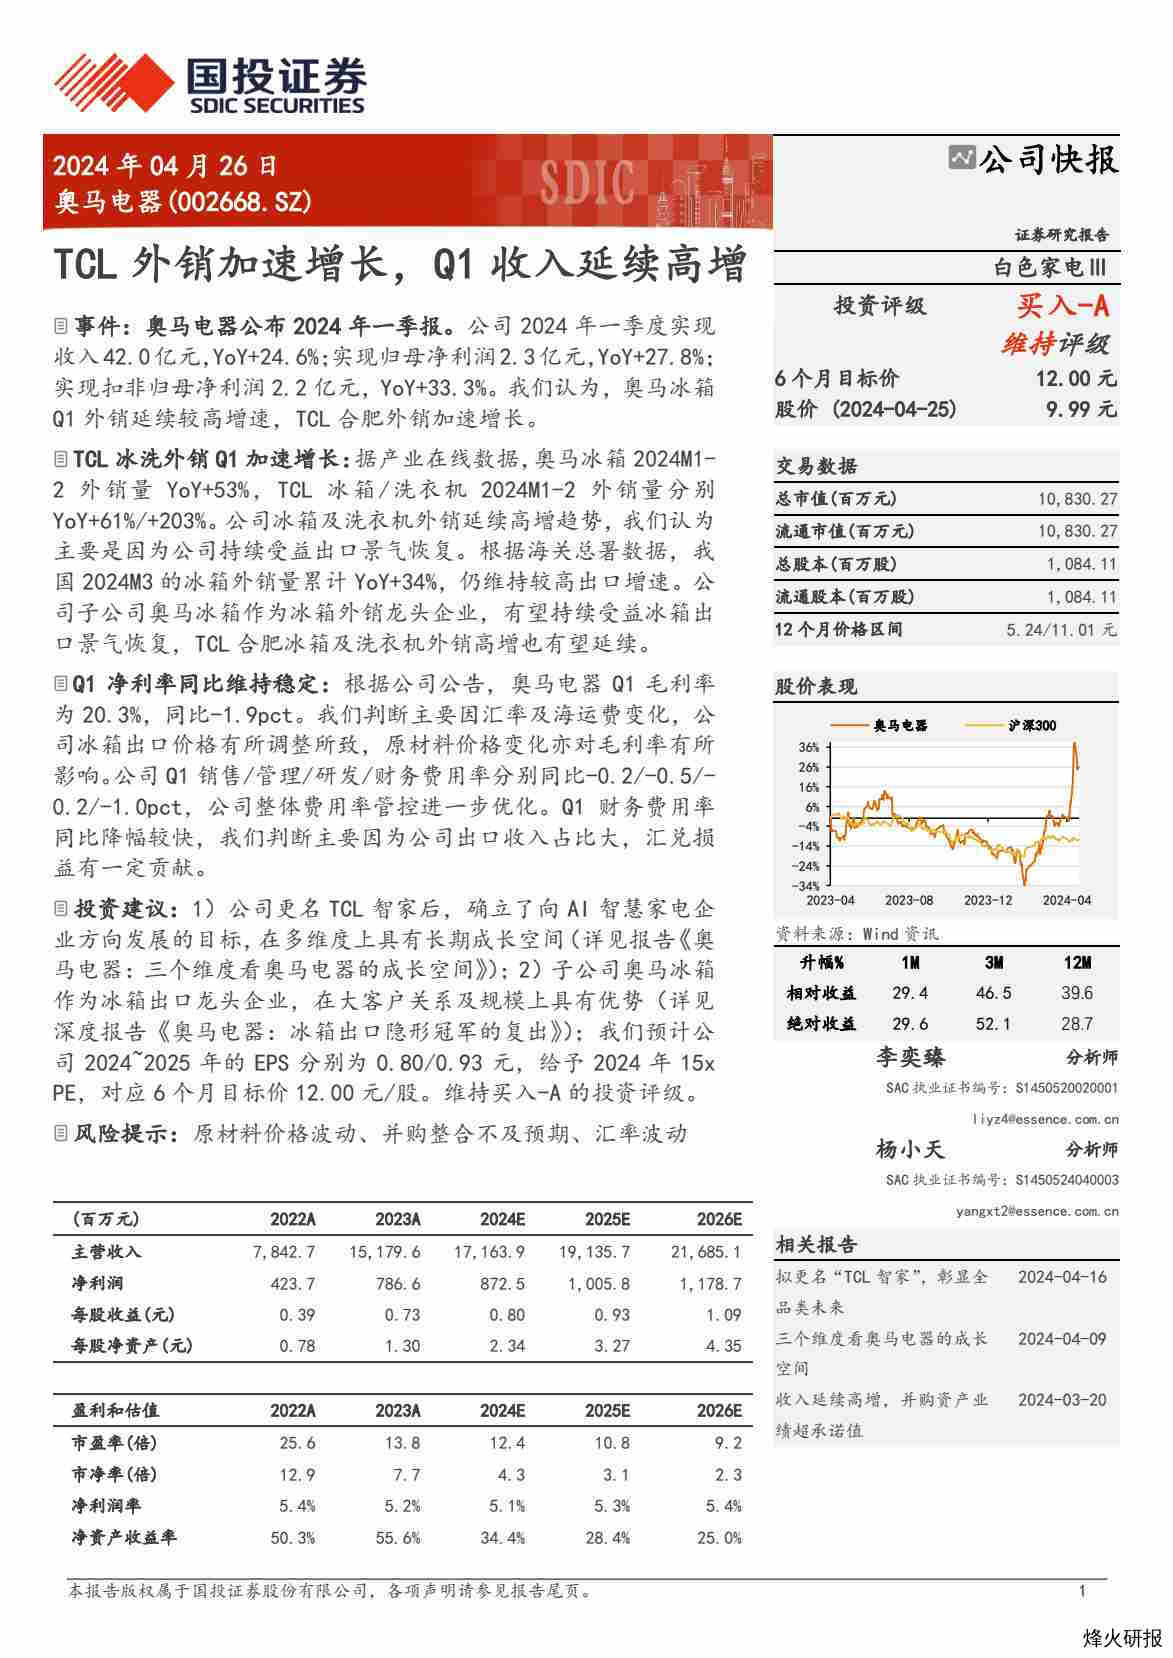 【国投证券】TCL外销加速增长，Q1收入延续高增.pdf-第一页